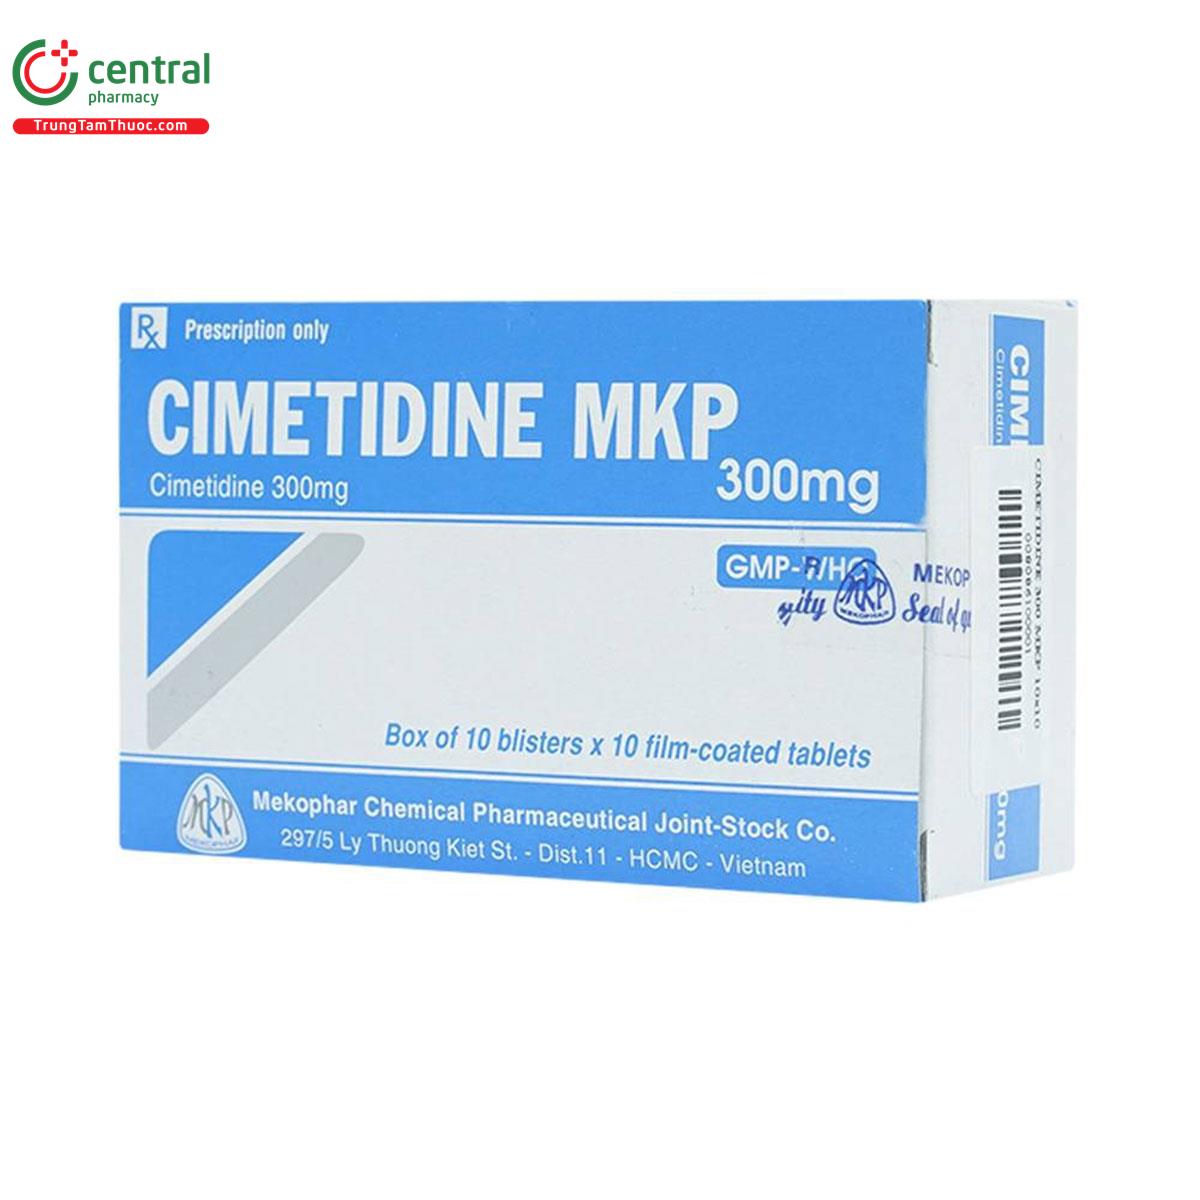 cimetidine mkp 300mg 6 V8476